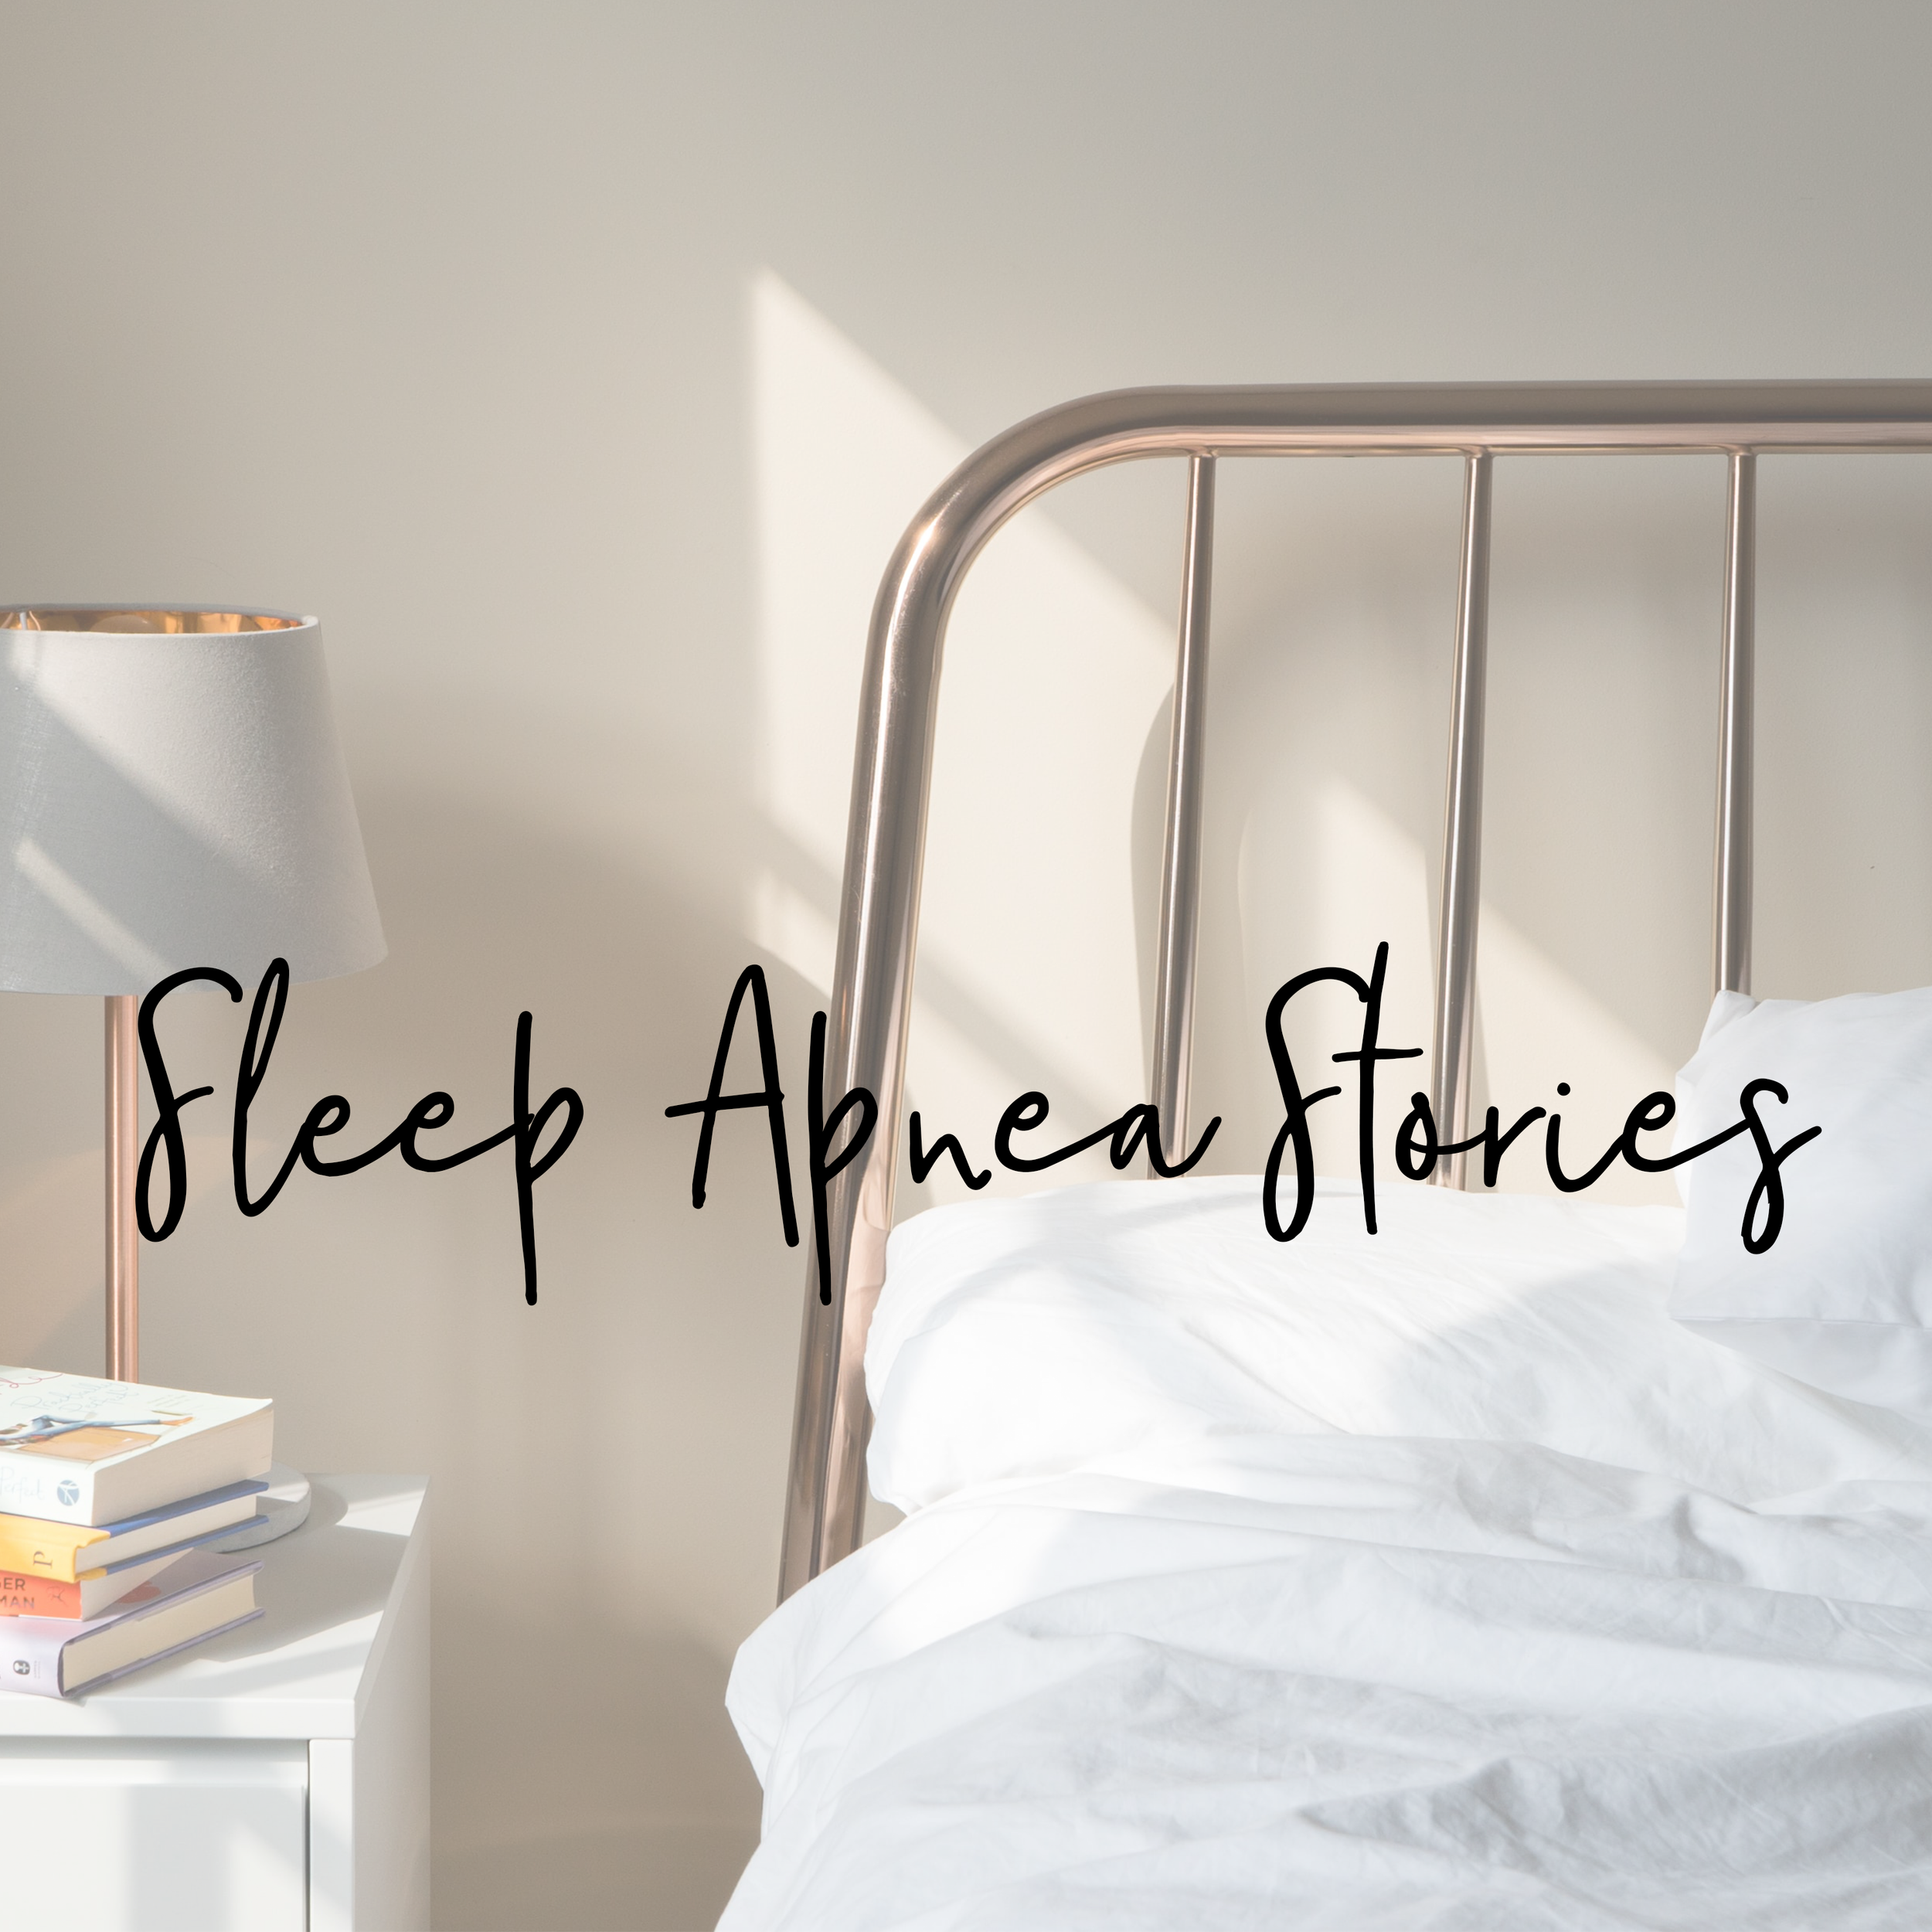 Sleep Apnea Stories.png